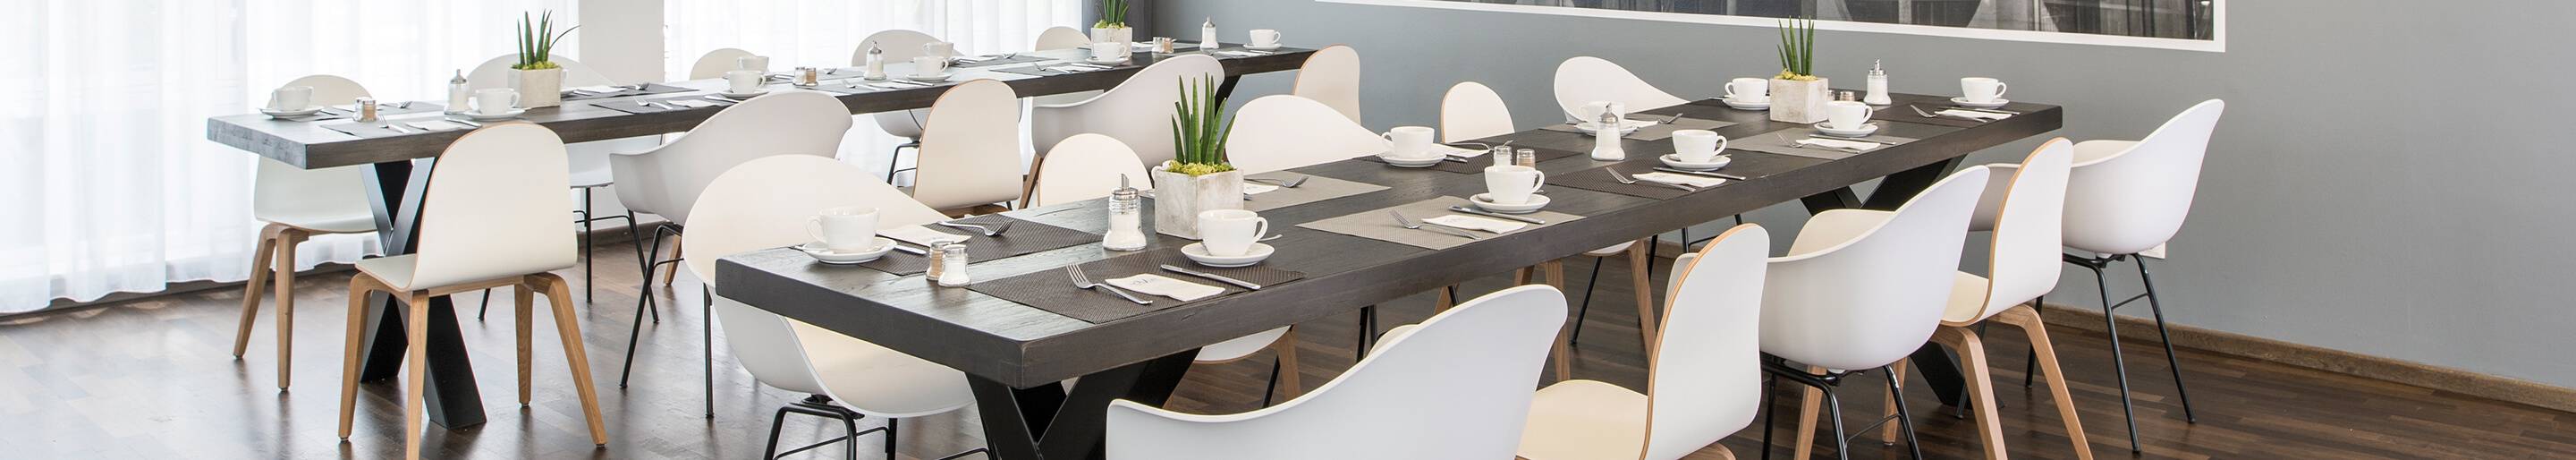 Systèmes de chaises modulaires pour votre restaurant ou hôtel